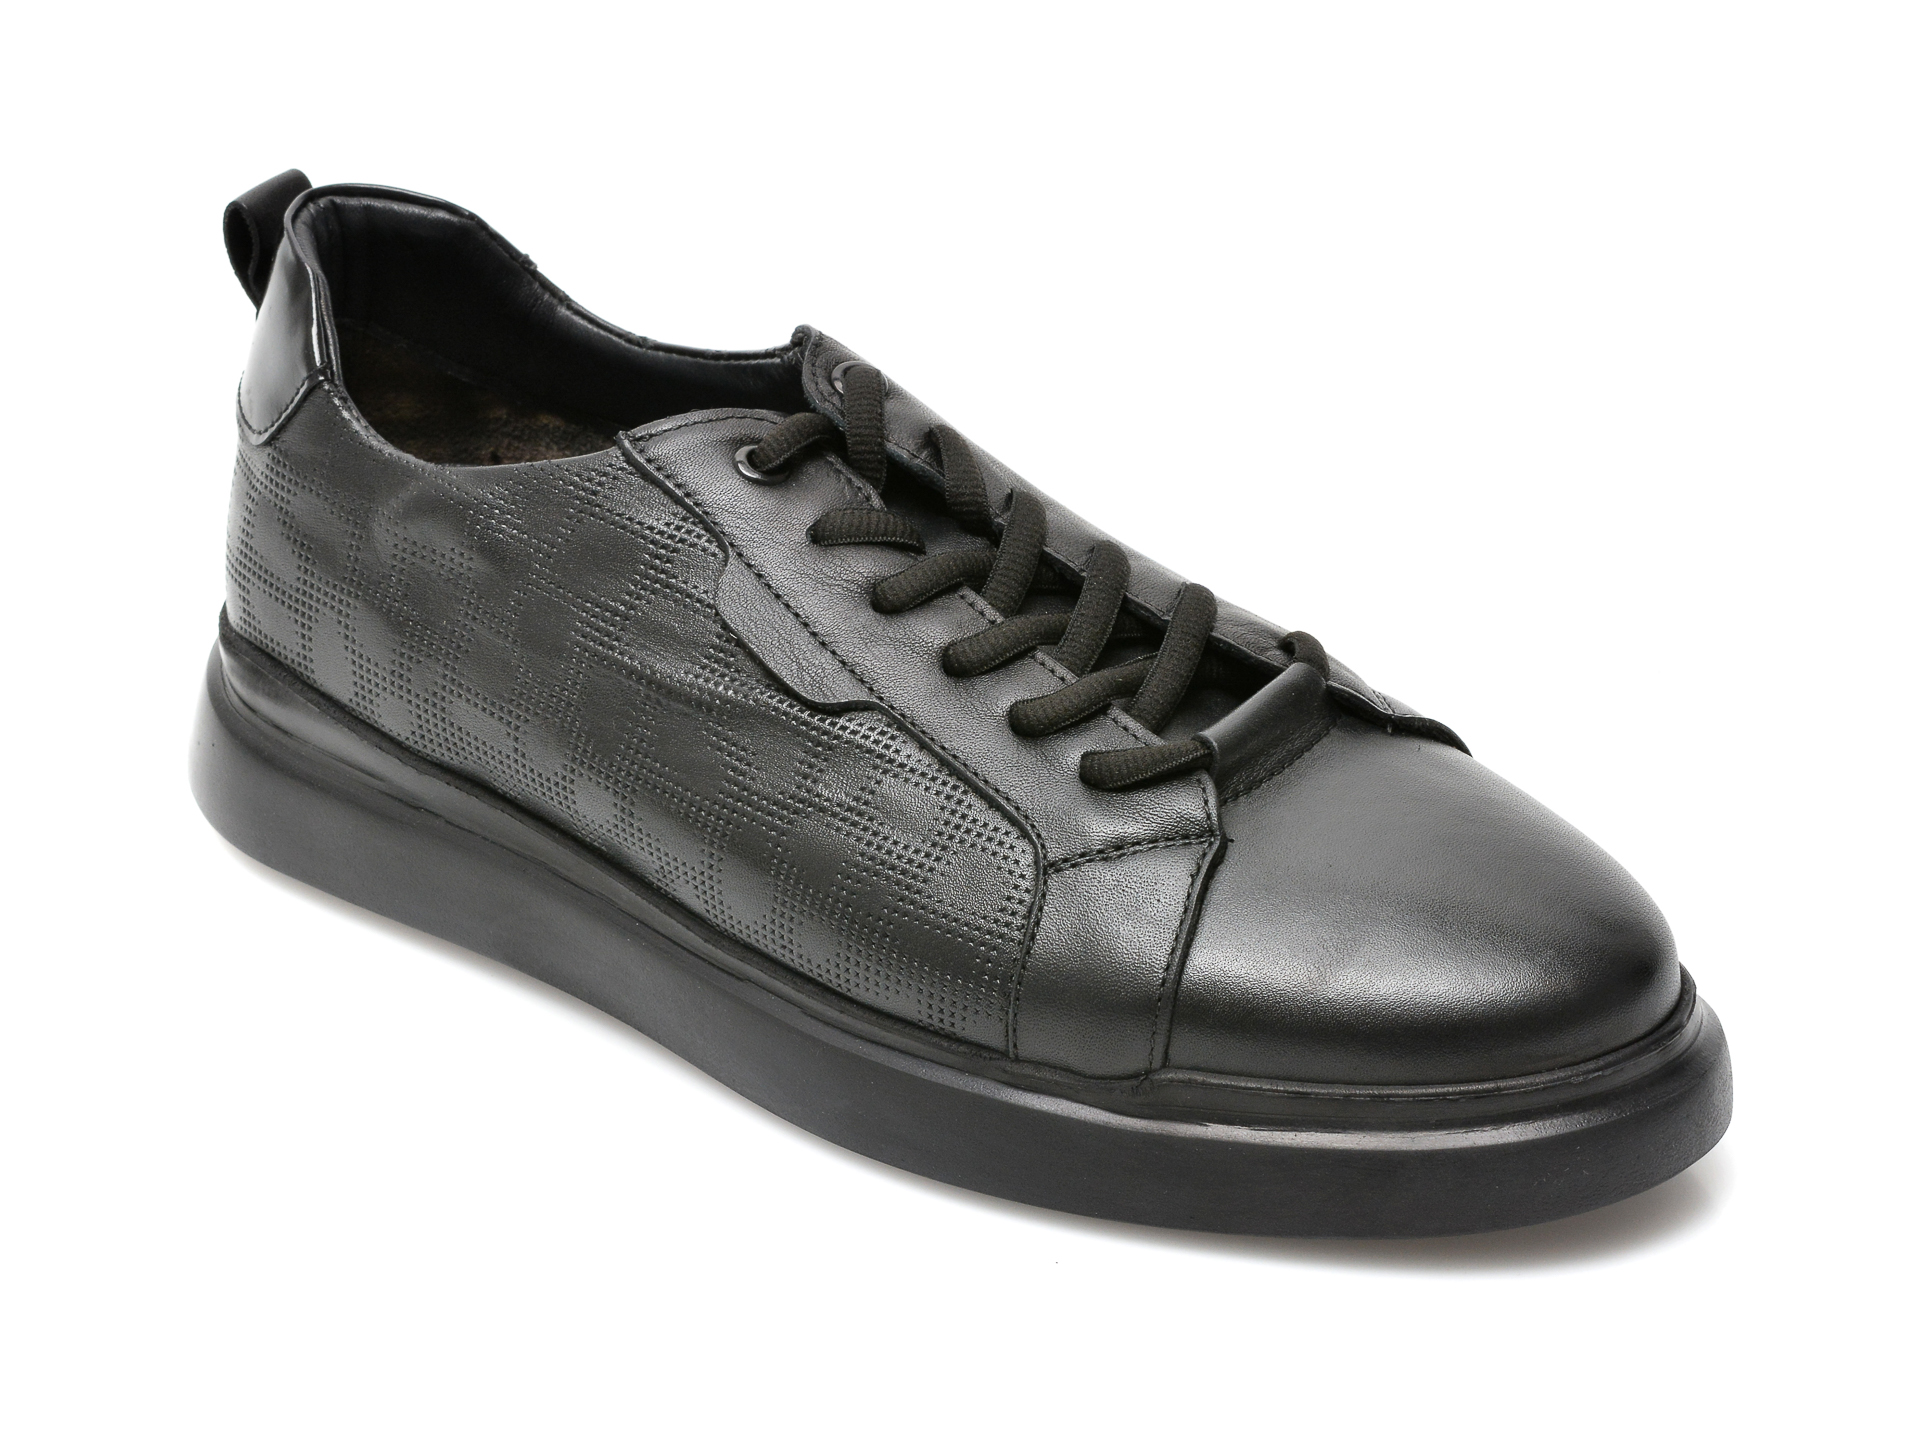 Pantofi OTTER negri, 24805, din piele naturala Otter poza reduceri 2021